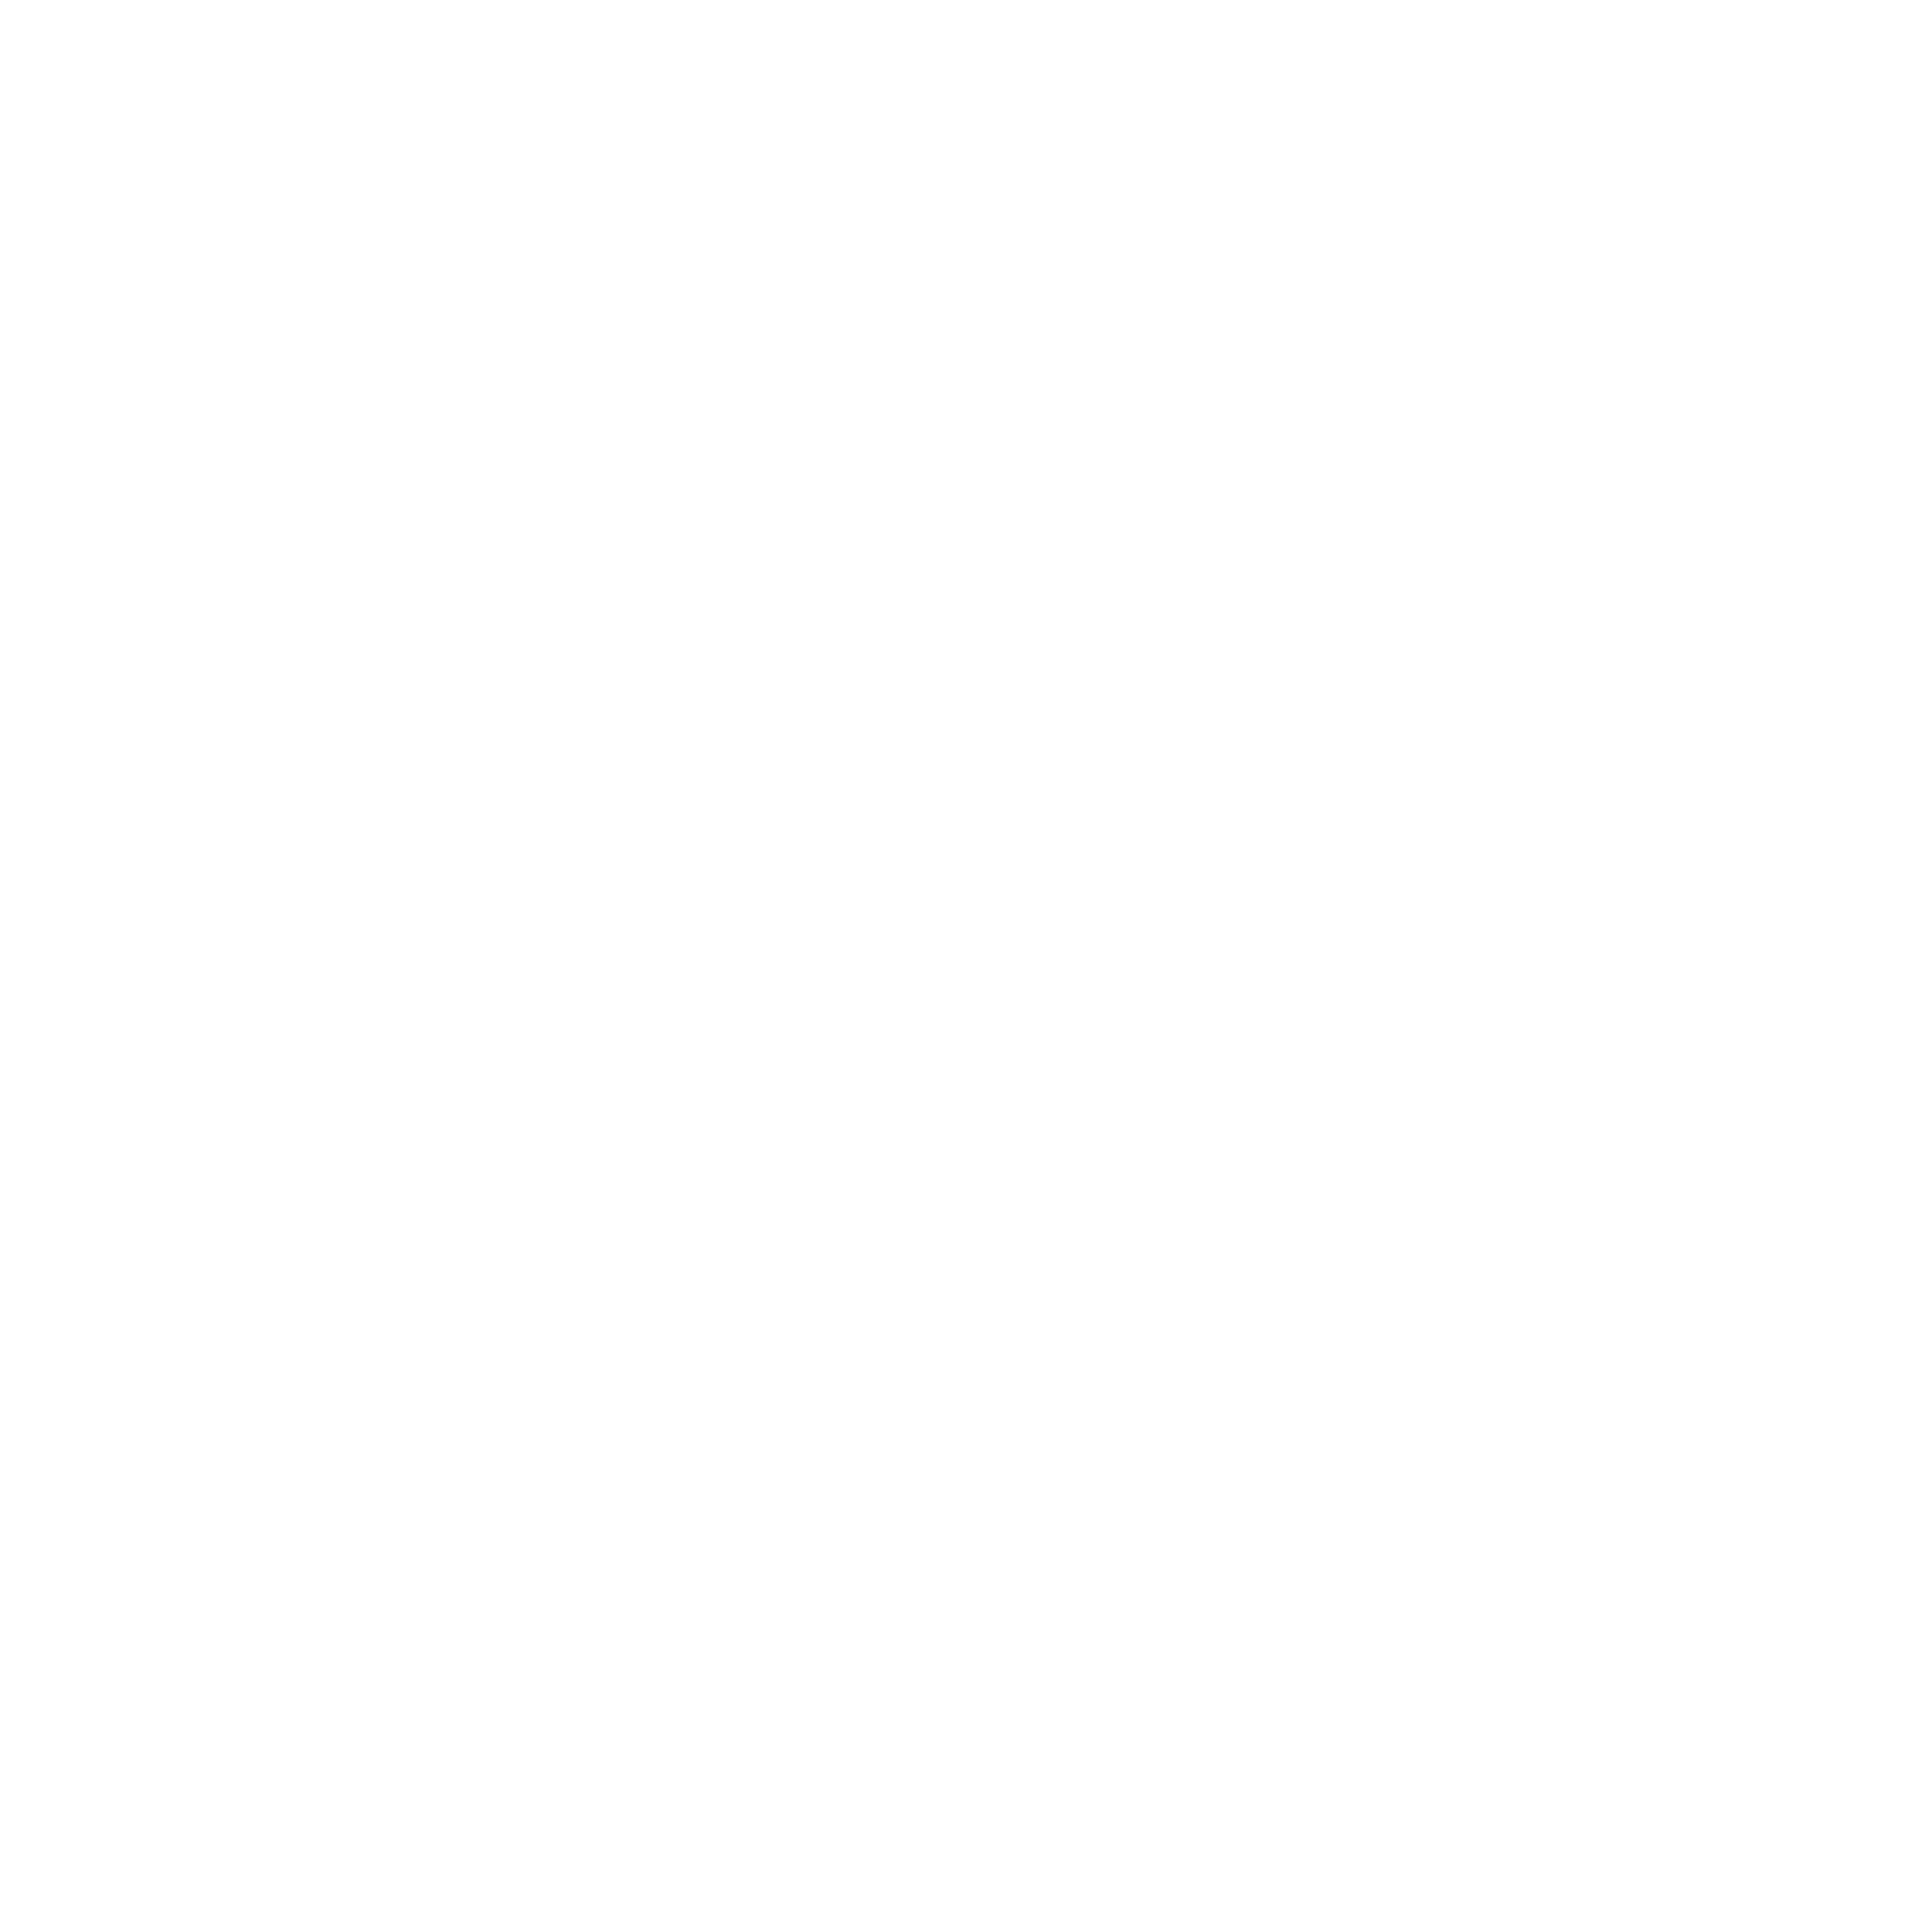 BTL logo white 1